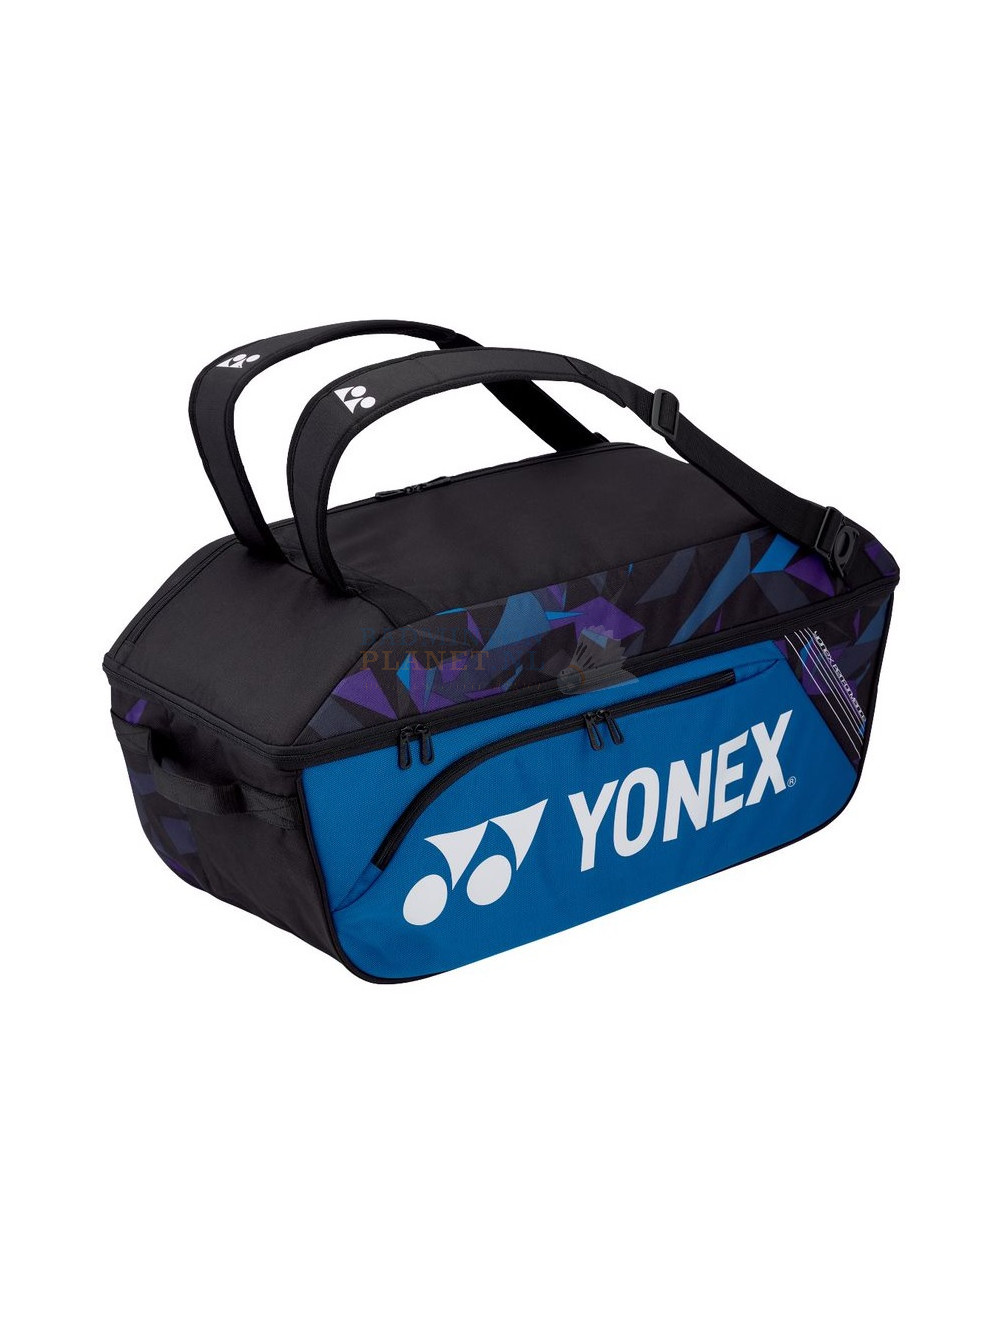 Spreekwoord Intuïtie federatie Yonex Pro Wide Open Racket Bag 92214EX Fine Blue badmintontas kopen? -  Badmintonplanet.nl